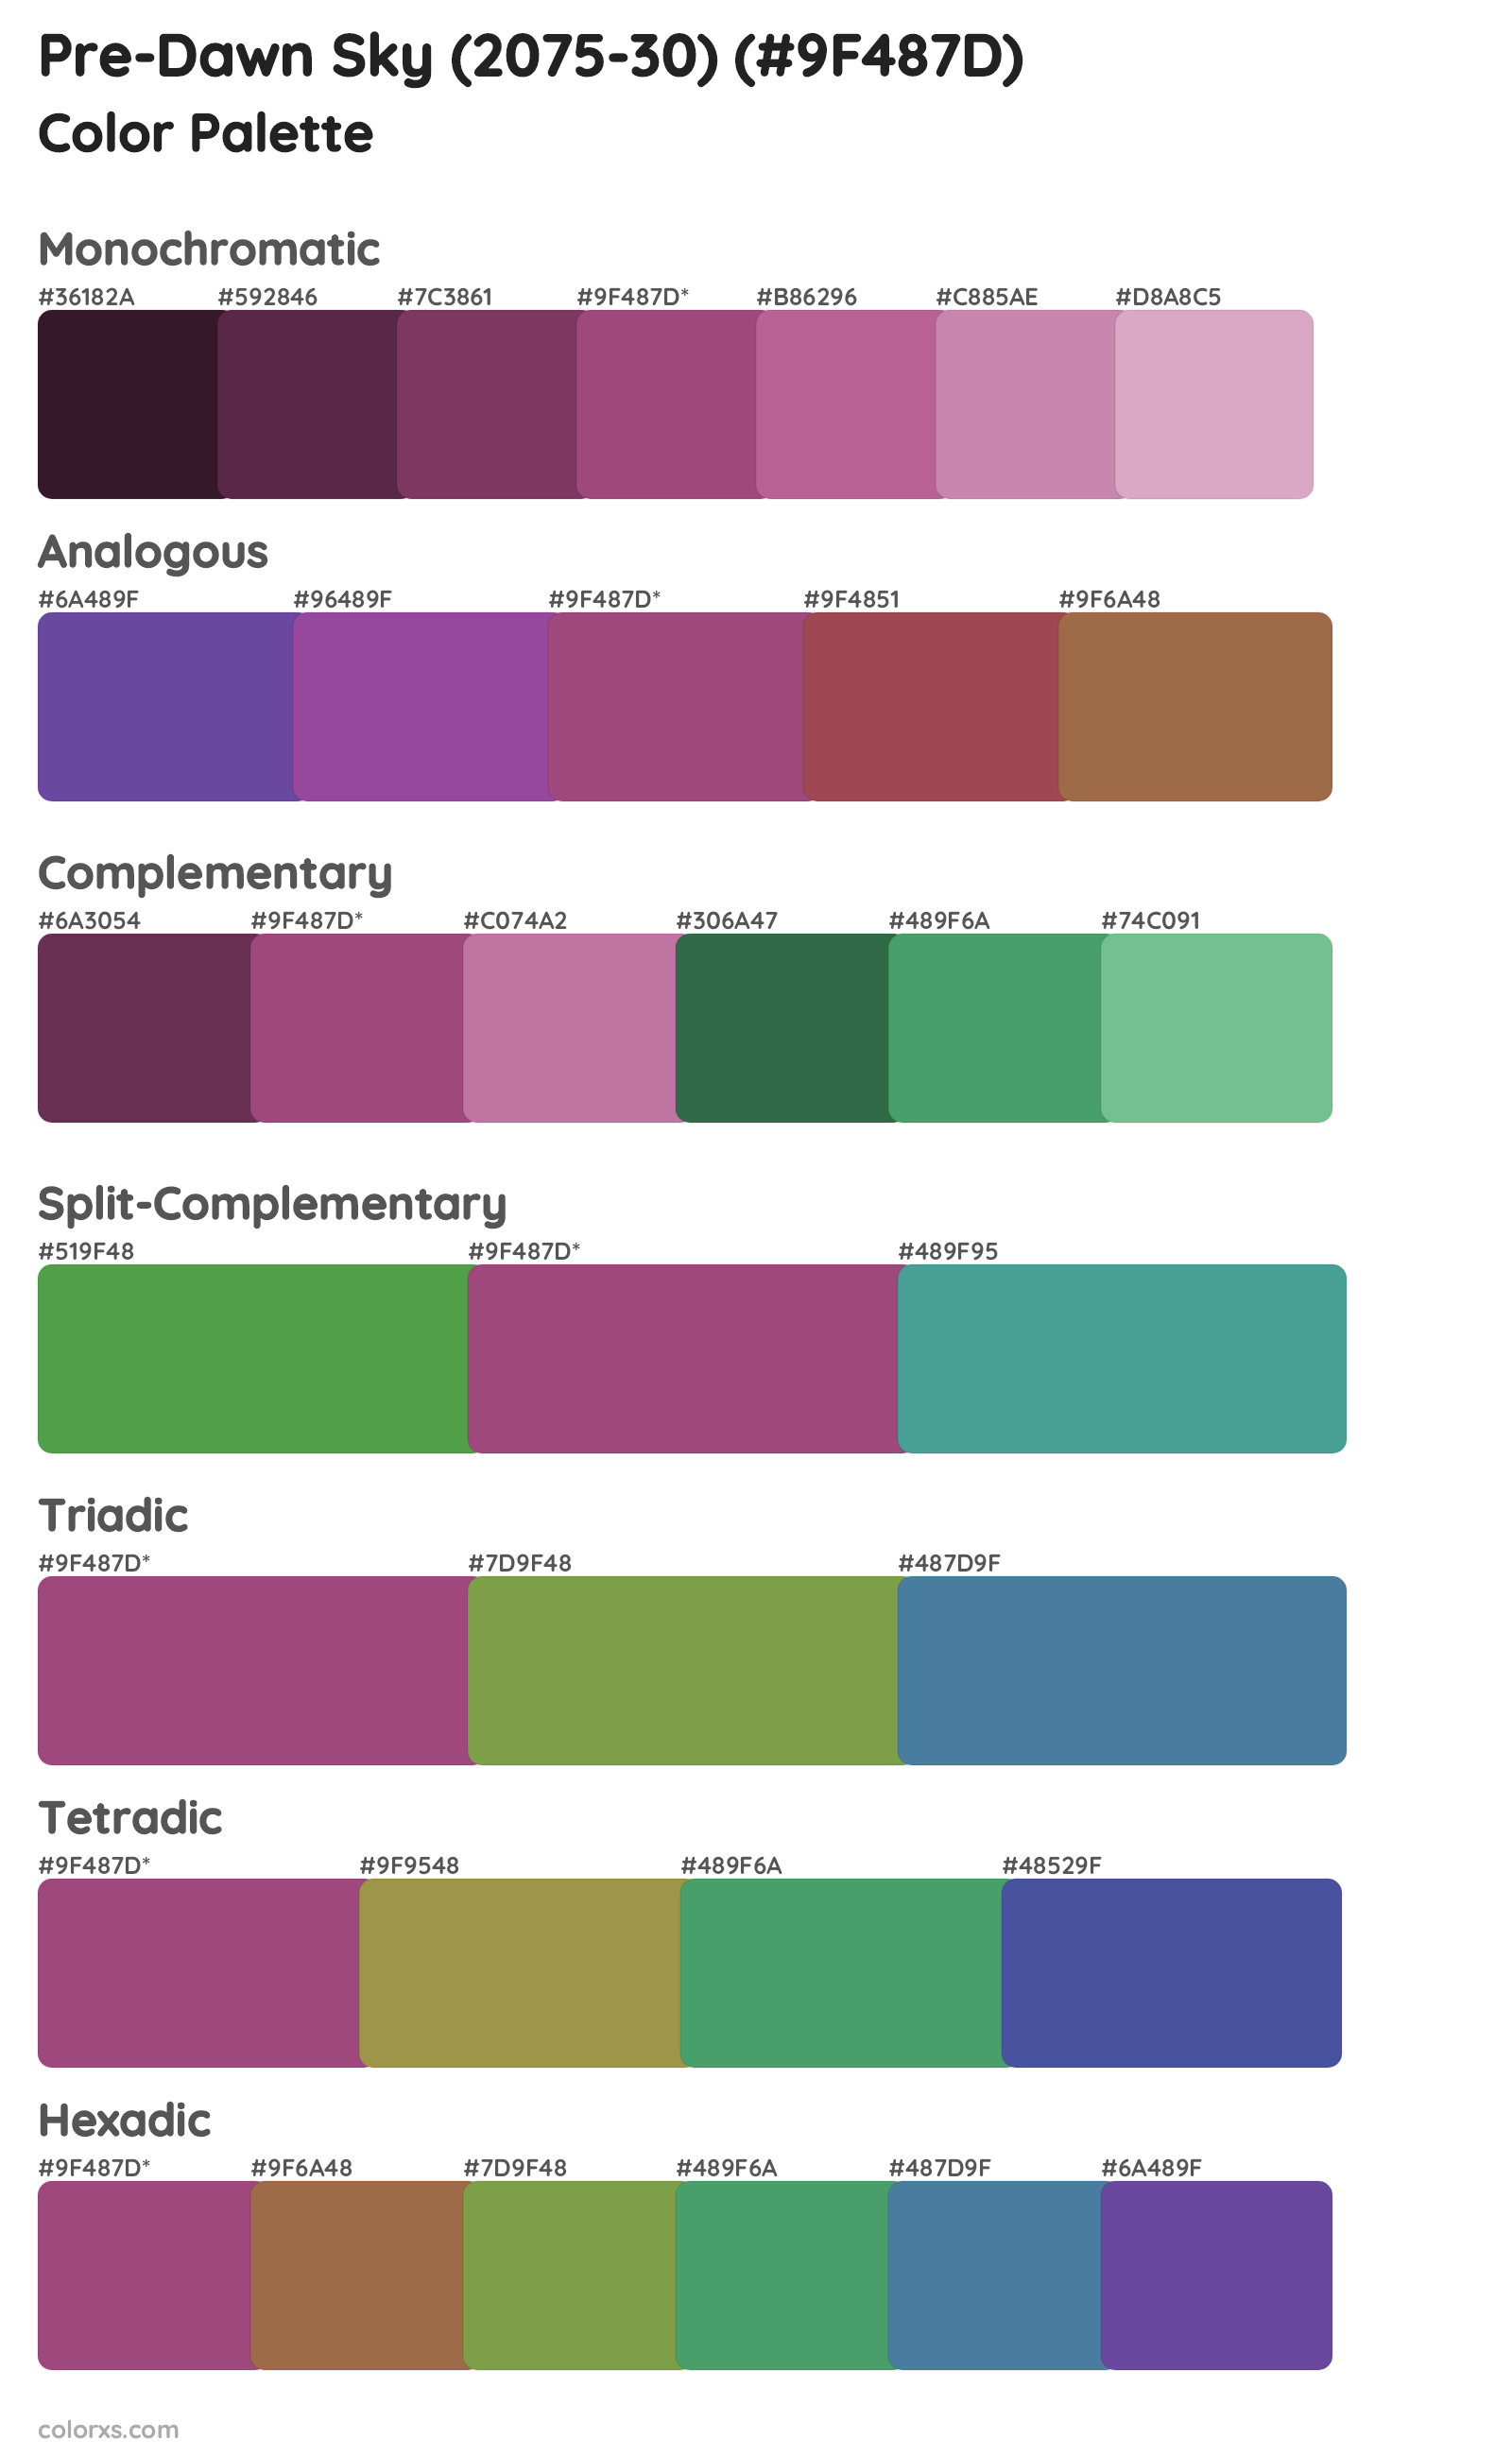 Pre-Dawn Sky (2075-30) Color Scheme Palettes